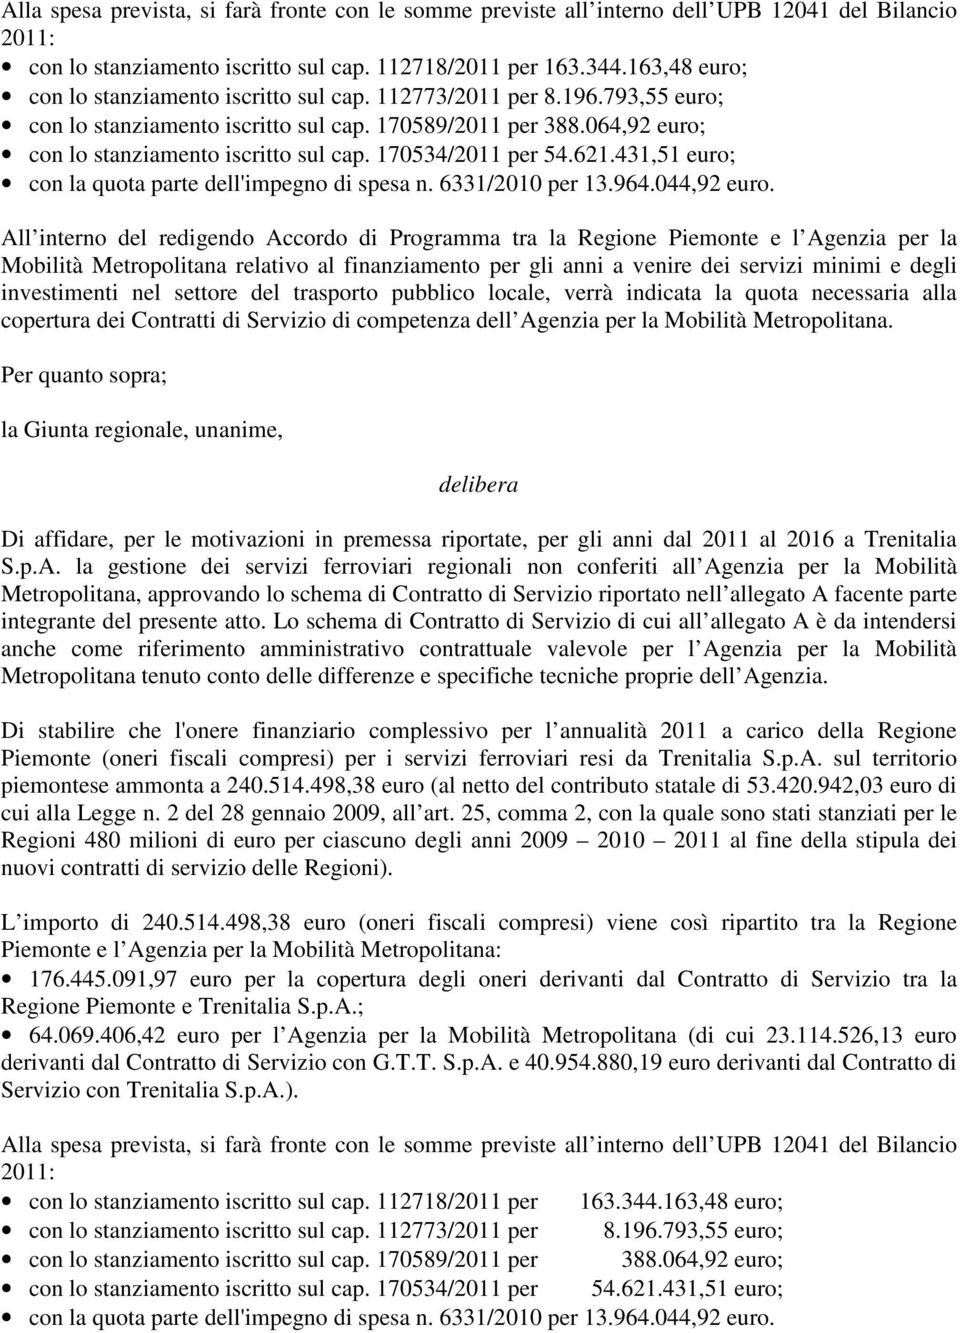 170534/2011 per 54.621.431,51 euro; con la quota parte dell'impegno di spesa n. 6331/2010 per 13.964.044,92 euro.